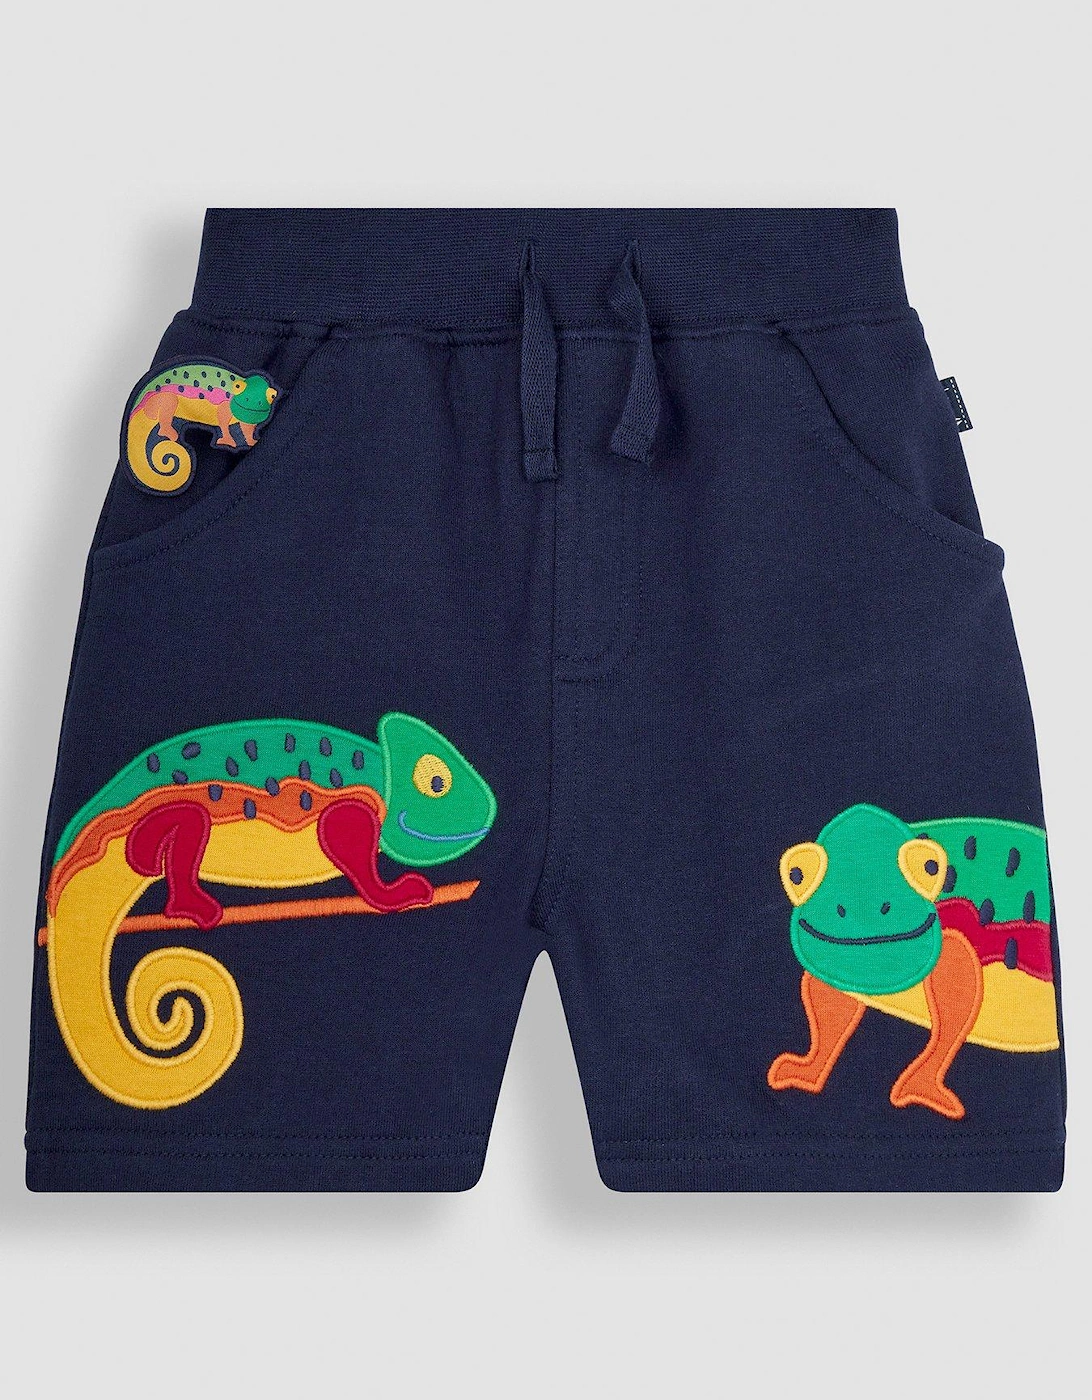 Boys Chameleon Applique Pet In Pocket Shorts, 2 of 1